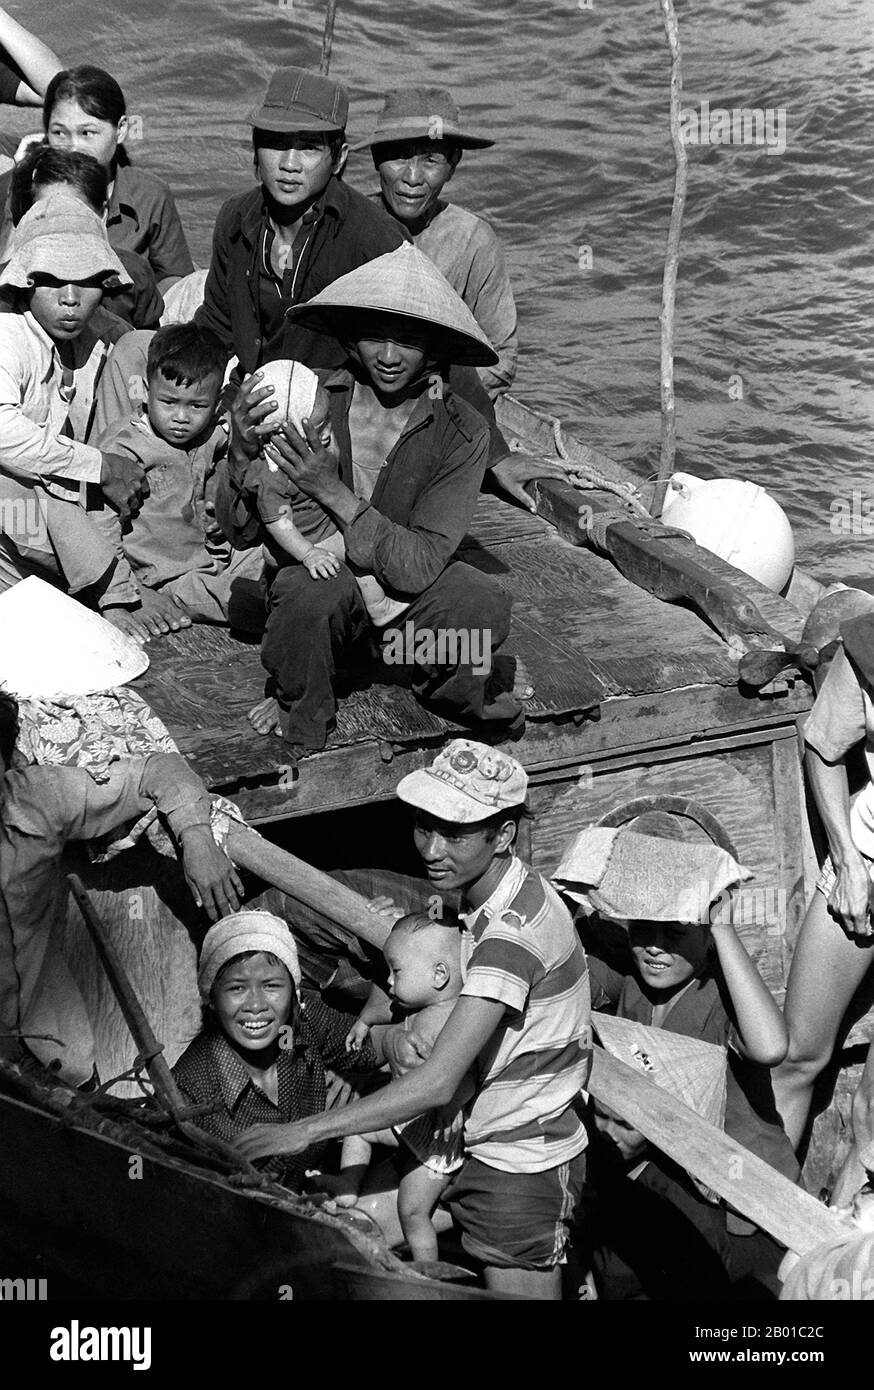 Vietnam: Un groupe de réfugiés "boat people" s'échappant de la domination communiste dans la mer de Chine du Sud. Photo du lieutenant Carl R. Begy (domaine public), 15 mai 1984. 35 réfugiés vietnamiens secourus par le navire de commandement USS Blue Ridge (LCC-19) au nord-est de Cam Ranh Bay, après avoir passé huit jours en mer. Les gens de bateau est un terme qui se réfère habituellement aux réfugiés ou aux demandeurs d'asile qui égrent en nombre dans des bateaux qui sont parfois vieux et grossièrement fabriqués. Le terme est entré en usage courant à la fin de 1970s avec le départ massif des réfugiés vietnamiens du Vietnam contrôlé par les communistes, après la guerre du Vietnam. Banque D'Images